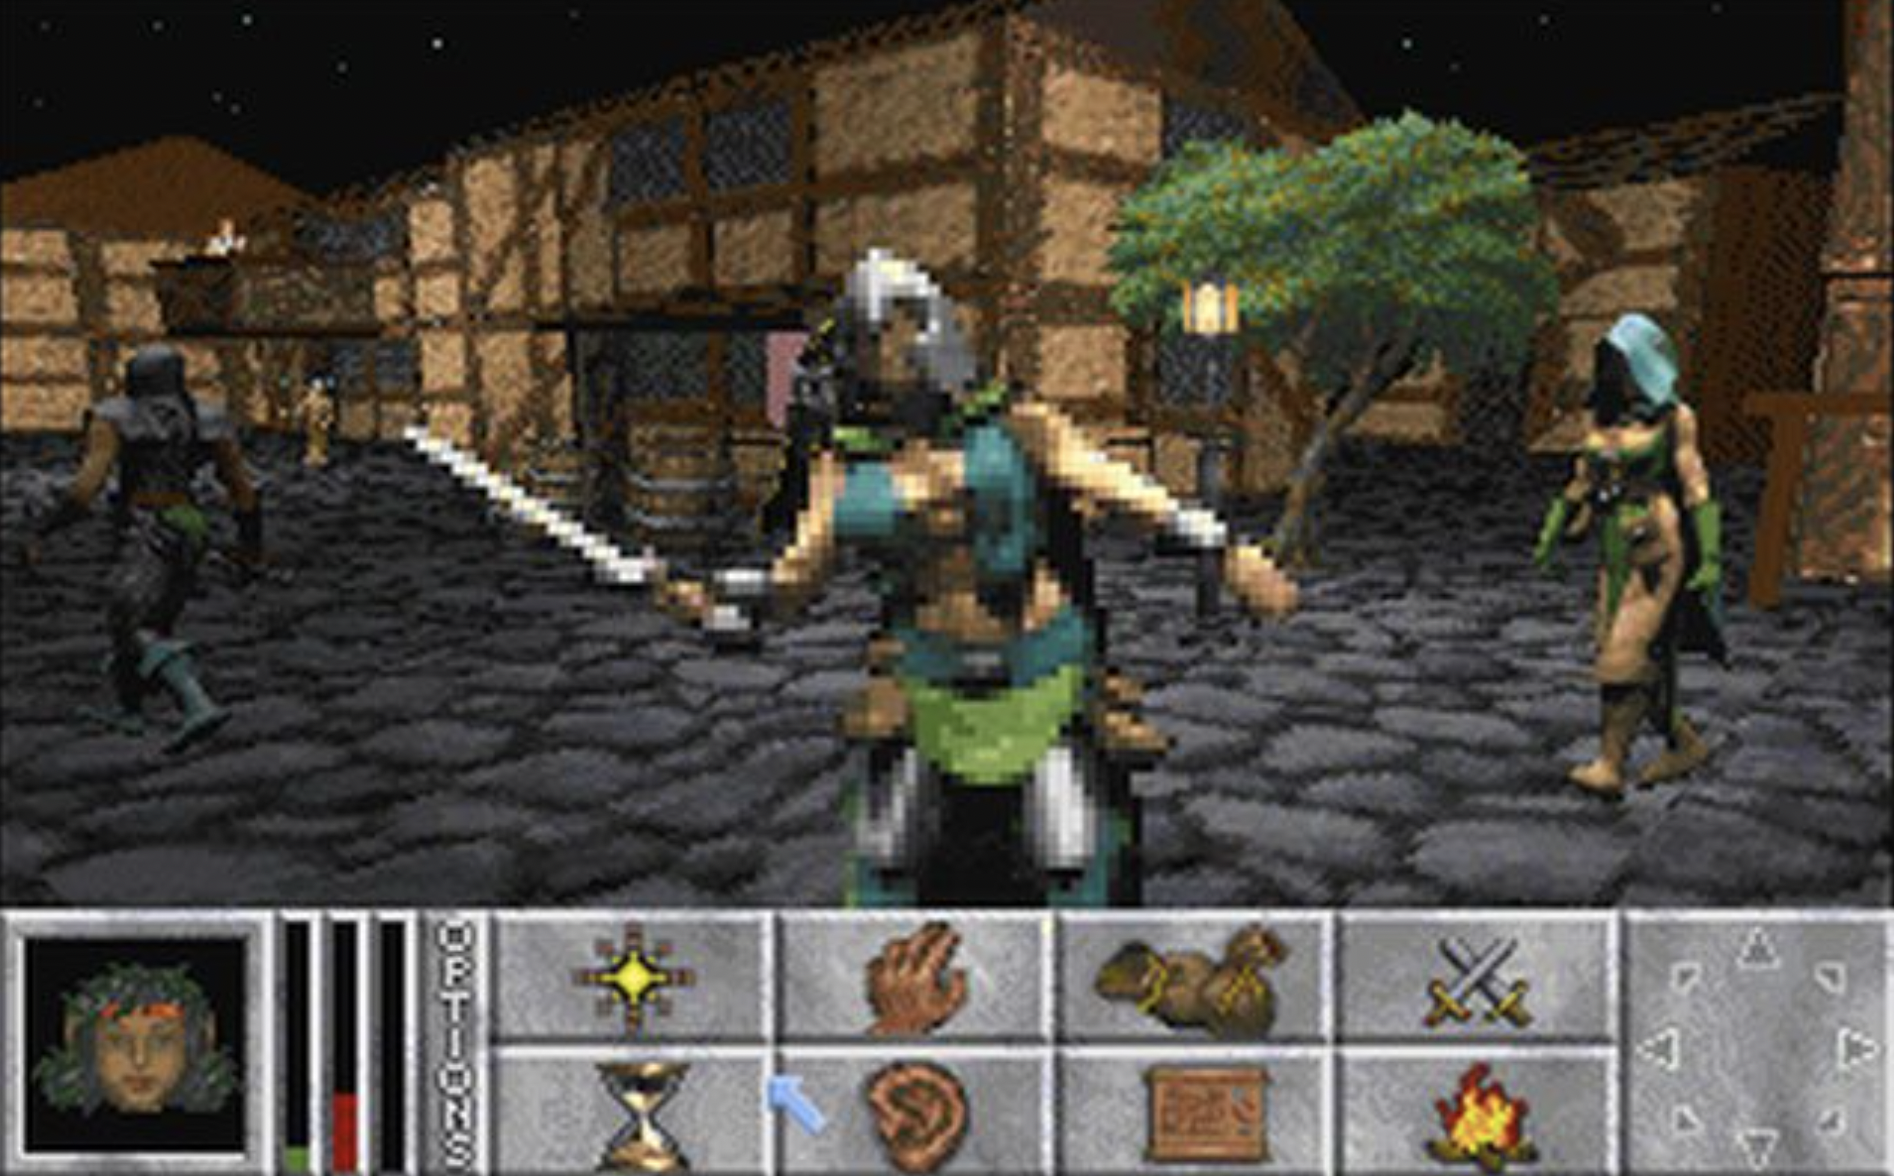 J2me игры. The Elder Scrolls II: daggerfall1996. The Elder Scrolls 2 Daggerfall. Daggerfall 1996. Daggerfall игра.